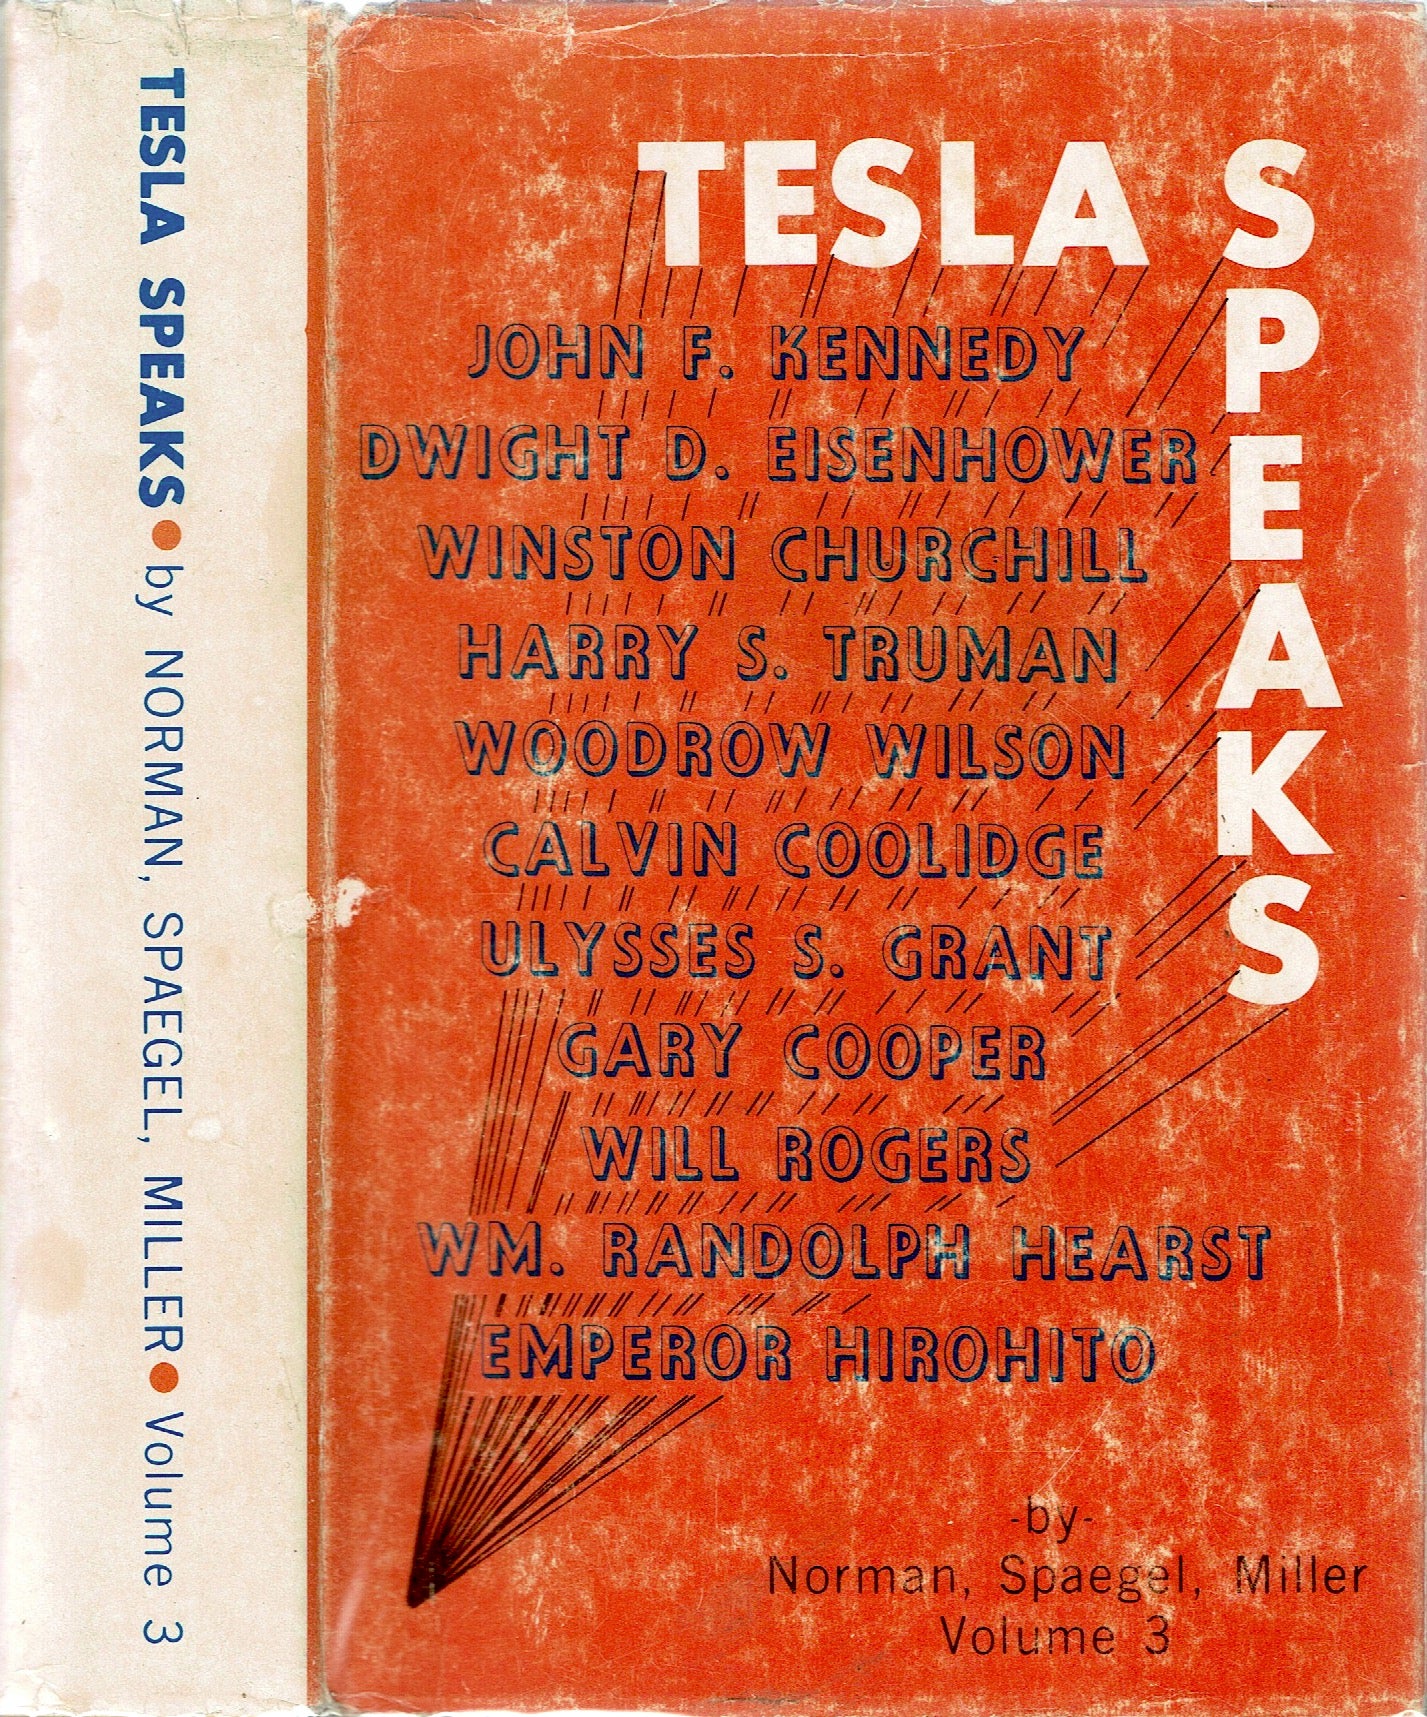 Tesla Speaks, Volume 3